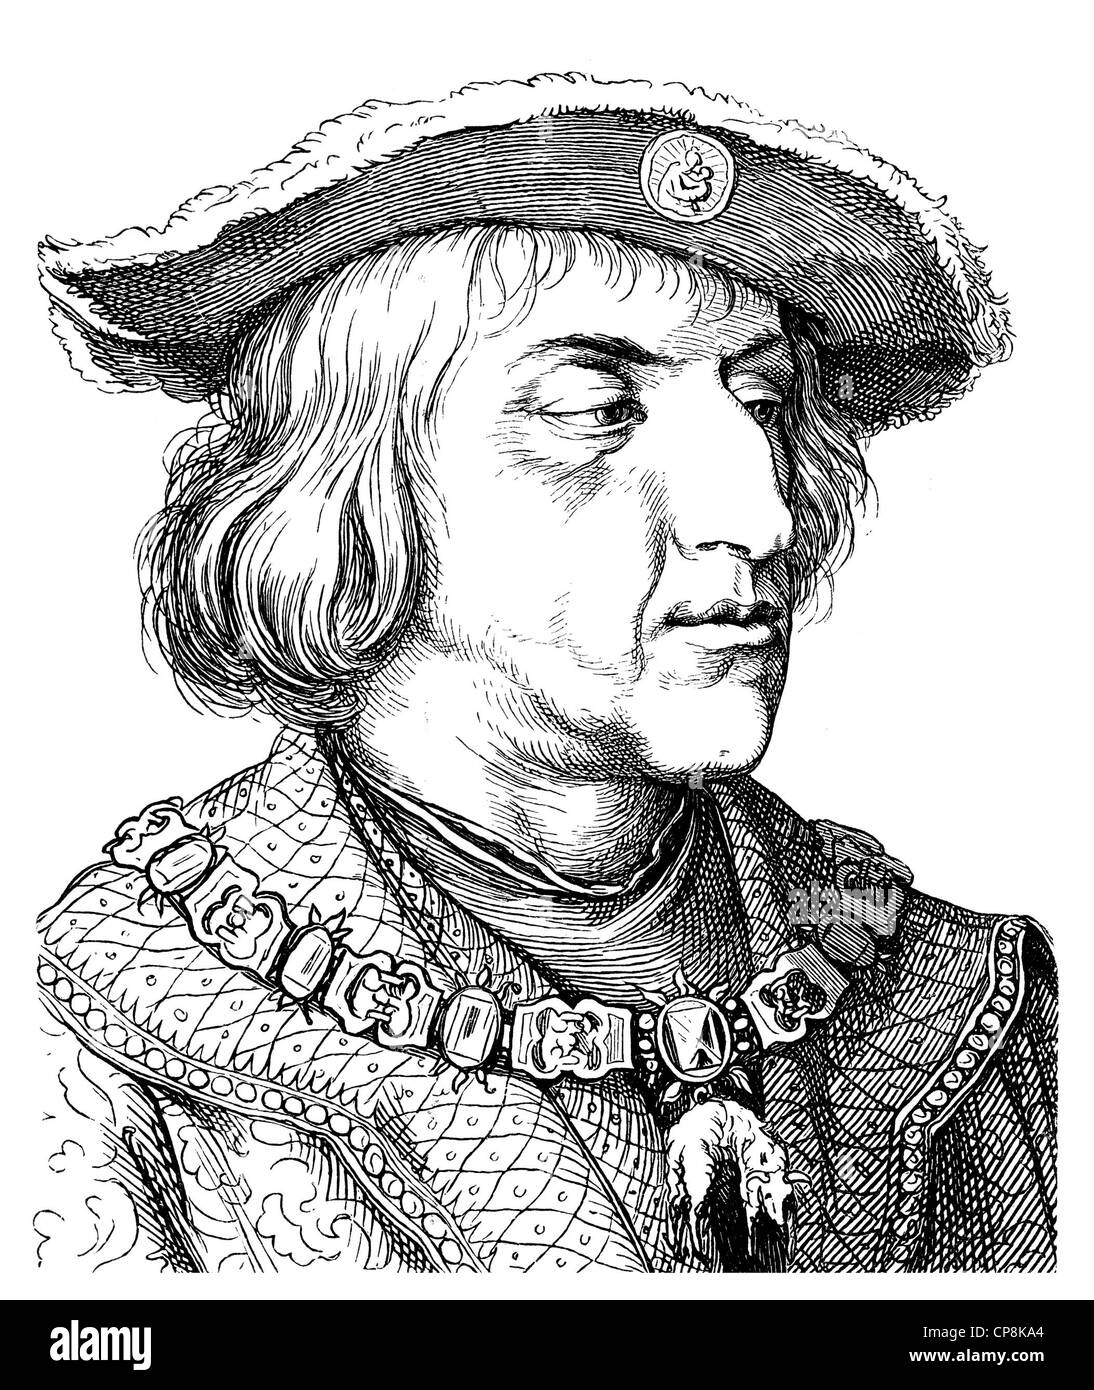 Massimiliano I. von Habsburg, noto come l'ultimo Cavaliere, 1459 -1519, duca di Borgogna, re di Germania, Arciduca d'Austria e imperatore Foto Stock